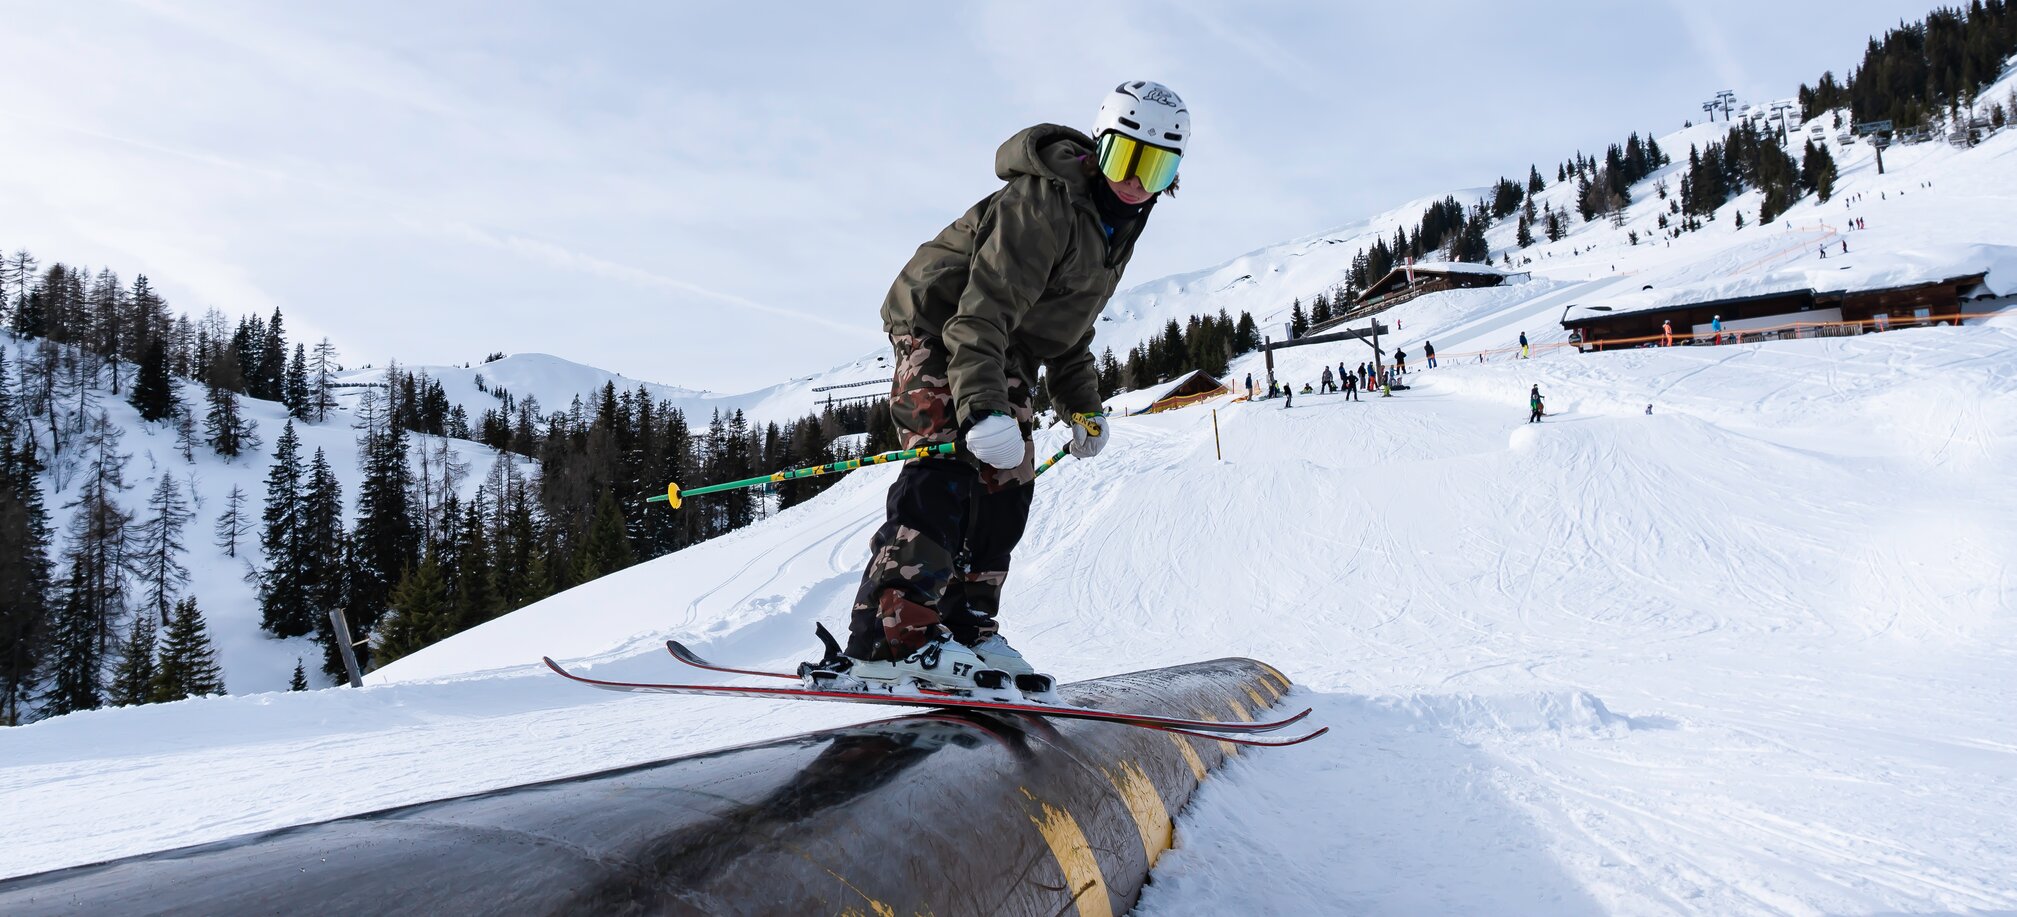 Freestyle Skifahren und Snowboarden in den Snowparks von Ski amadé - Rookie Of The Year Matej Svancer